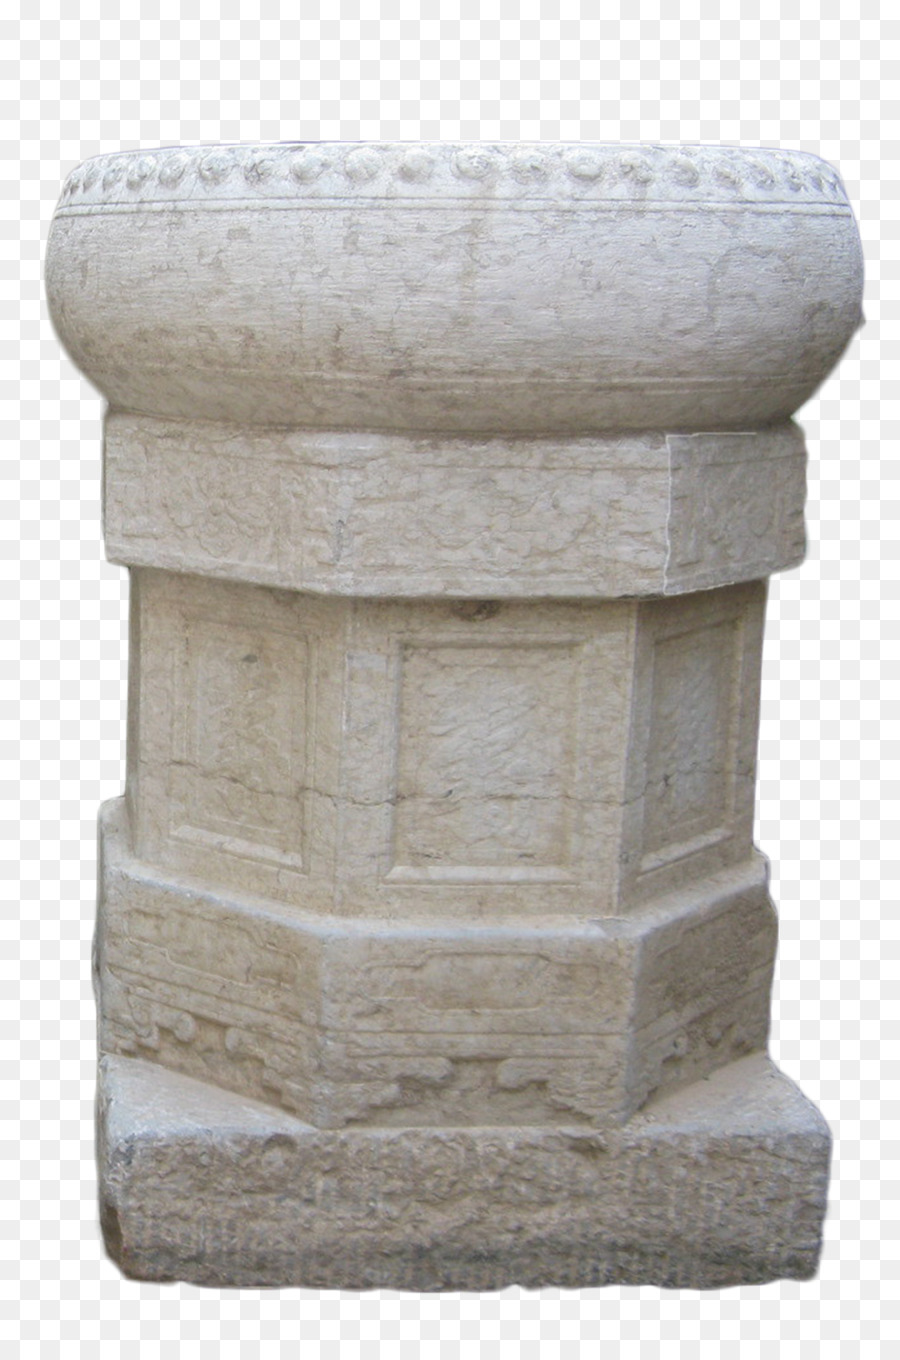 21st century Zylinder - 21st century stone pier